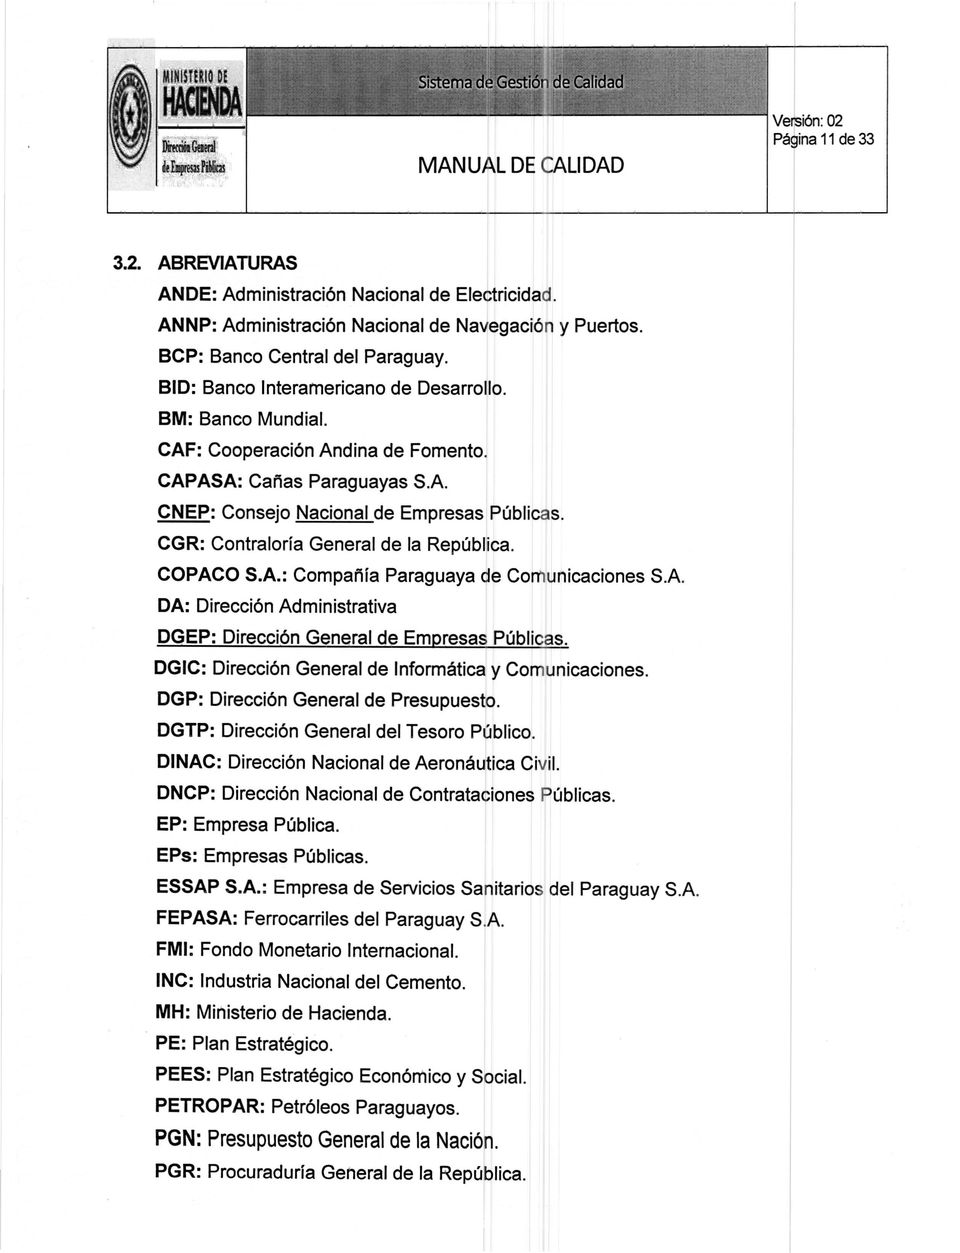 CGR: Contraloría General de la República. COPACO S.A.: Compañía Paraguaya ellecomunicaciones S.A. DA: Dirección Administrativa DGEP: Dirección General de Empresas públícas.